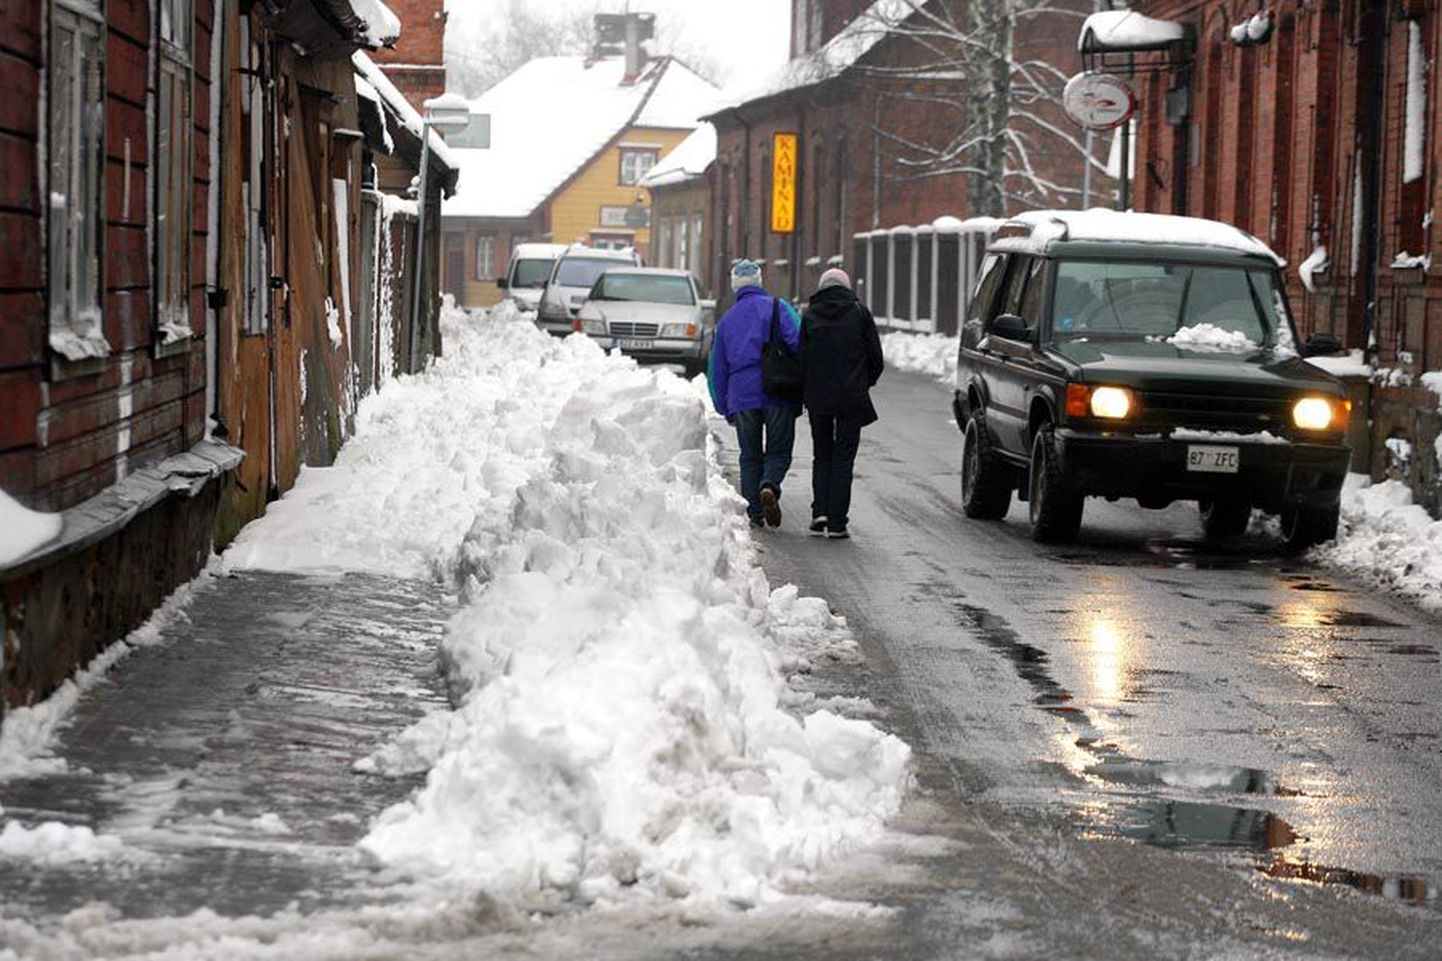 Kui sõiduteedelt jõuti eile lumi ära lükata, siis kinnistuomanike hooldatavatel kõnniteedel oli koristamata lõike. Pildil on Kauba tänav Viljandis.